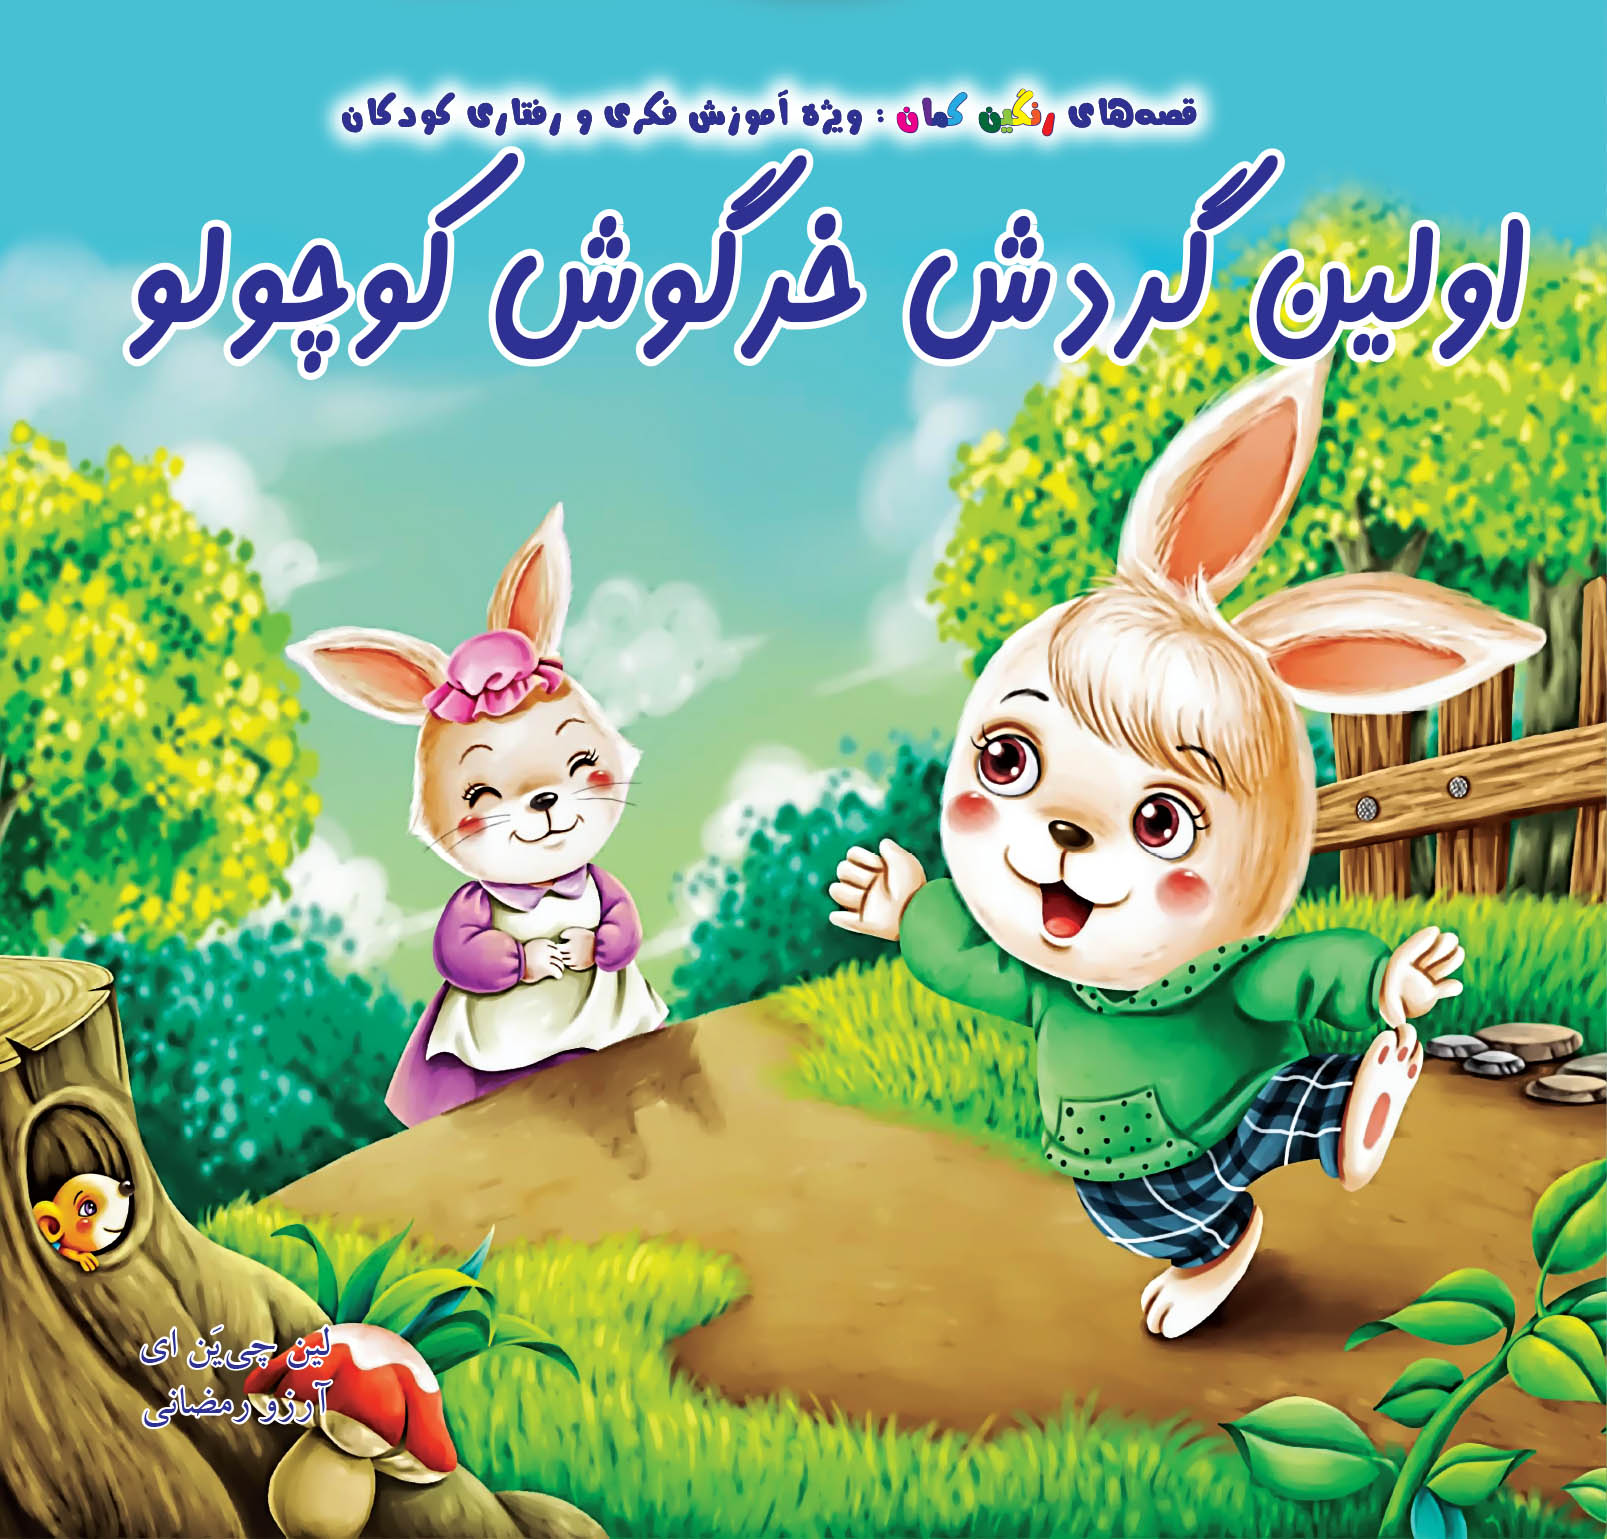 اولین گردش خرگوش کوچولو | شبکه دانی